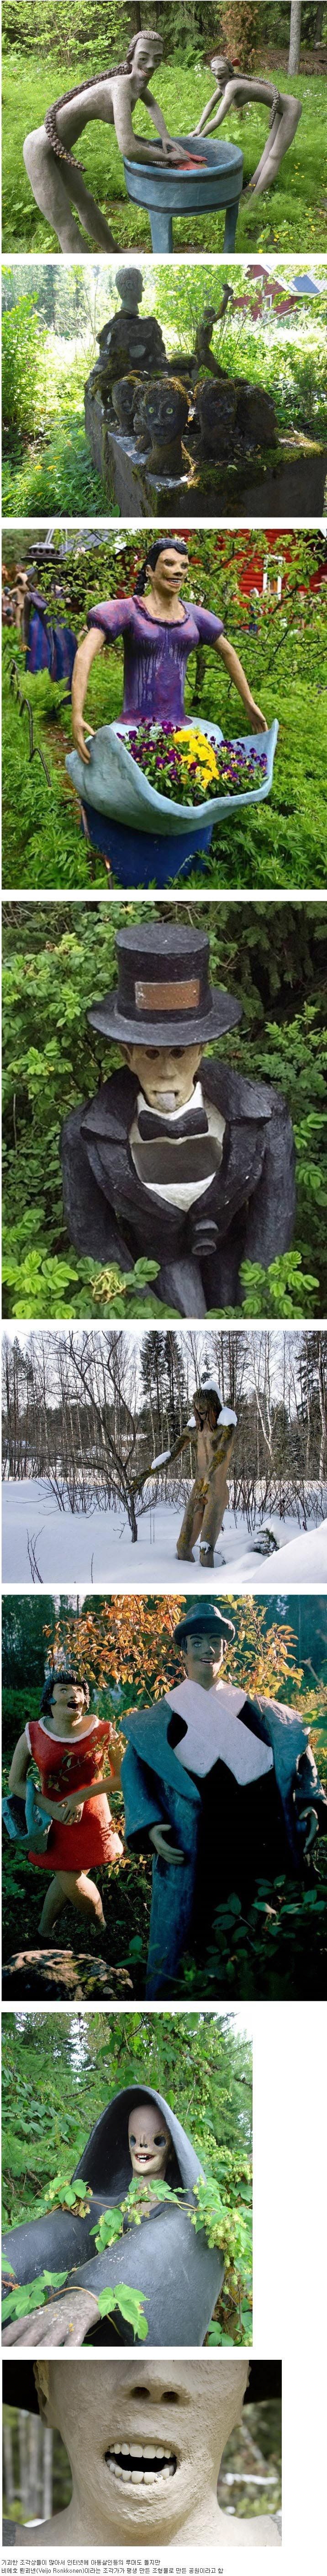 밤에 가면 좋다는 핀란드 조각 공원.